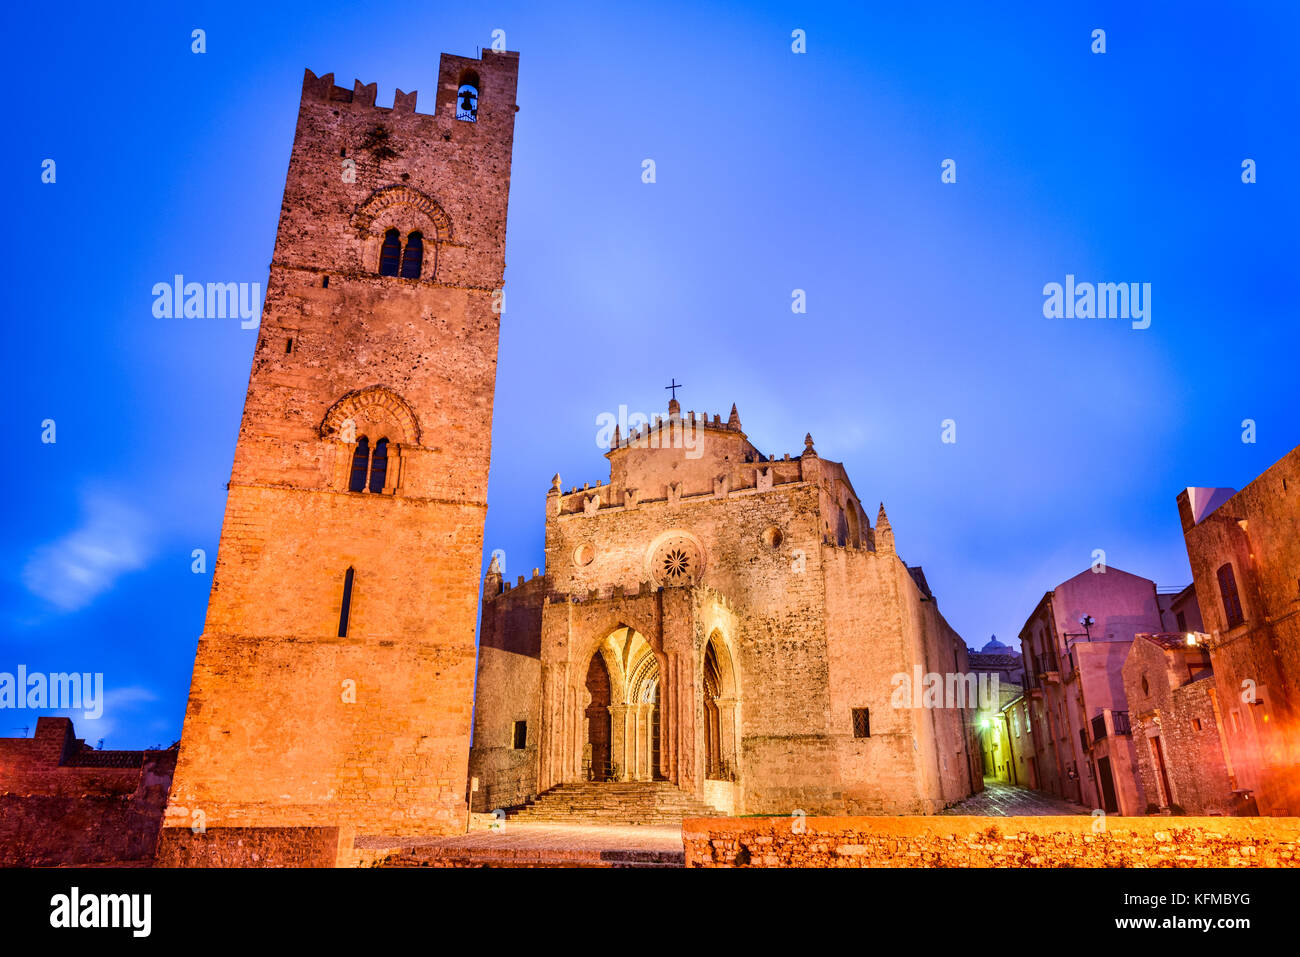 Erice, Sicile. Duomo dell'Assunta ou Chiesa Madre église principale de la ville médiévale de Erix, Italie. Banque D'Images